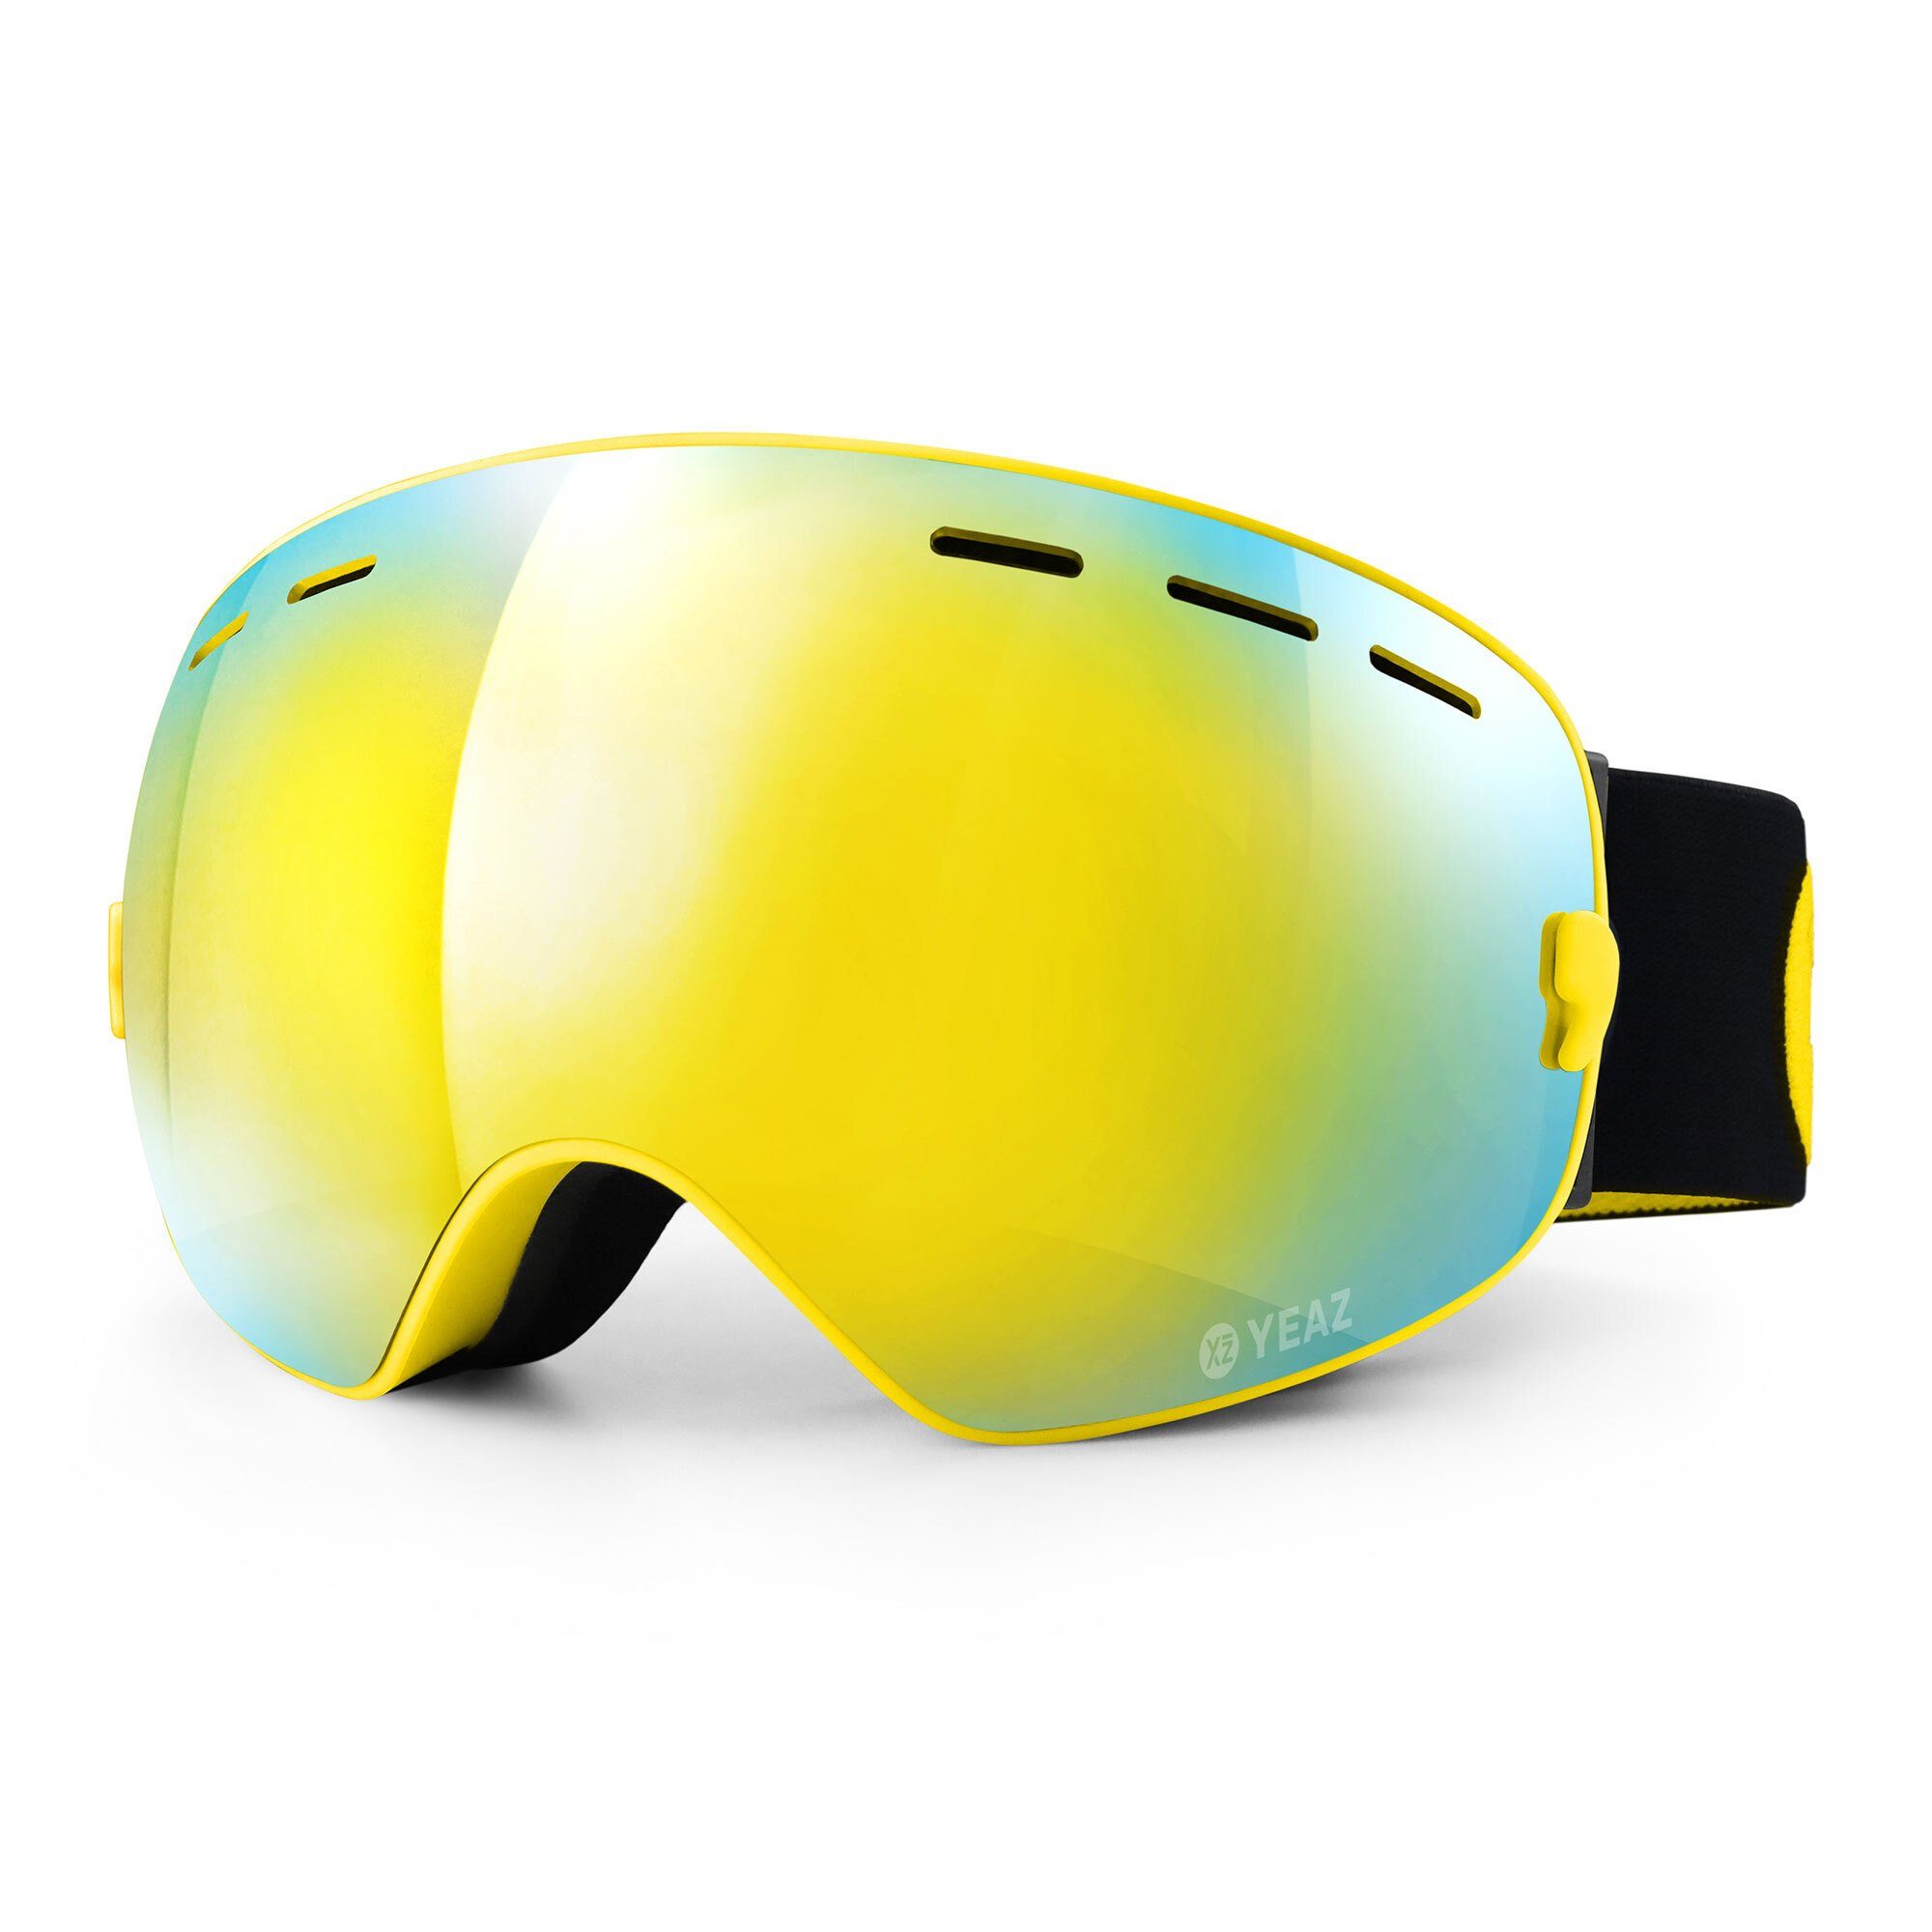 YEAZ Skibrille XTRM-SUMMIT, Premium-Ski- und Italy) Sicht für Anti-Fog-Beschichtung für Blendschutz Jugendliche, Erwachsene klare in und & (Made Snowboardbrille